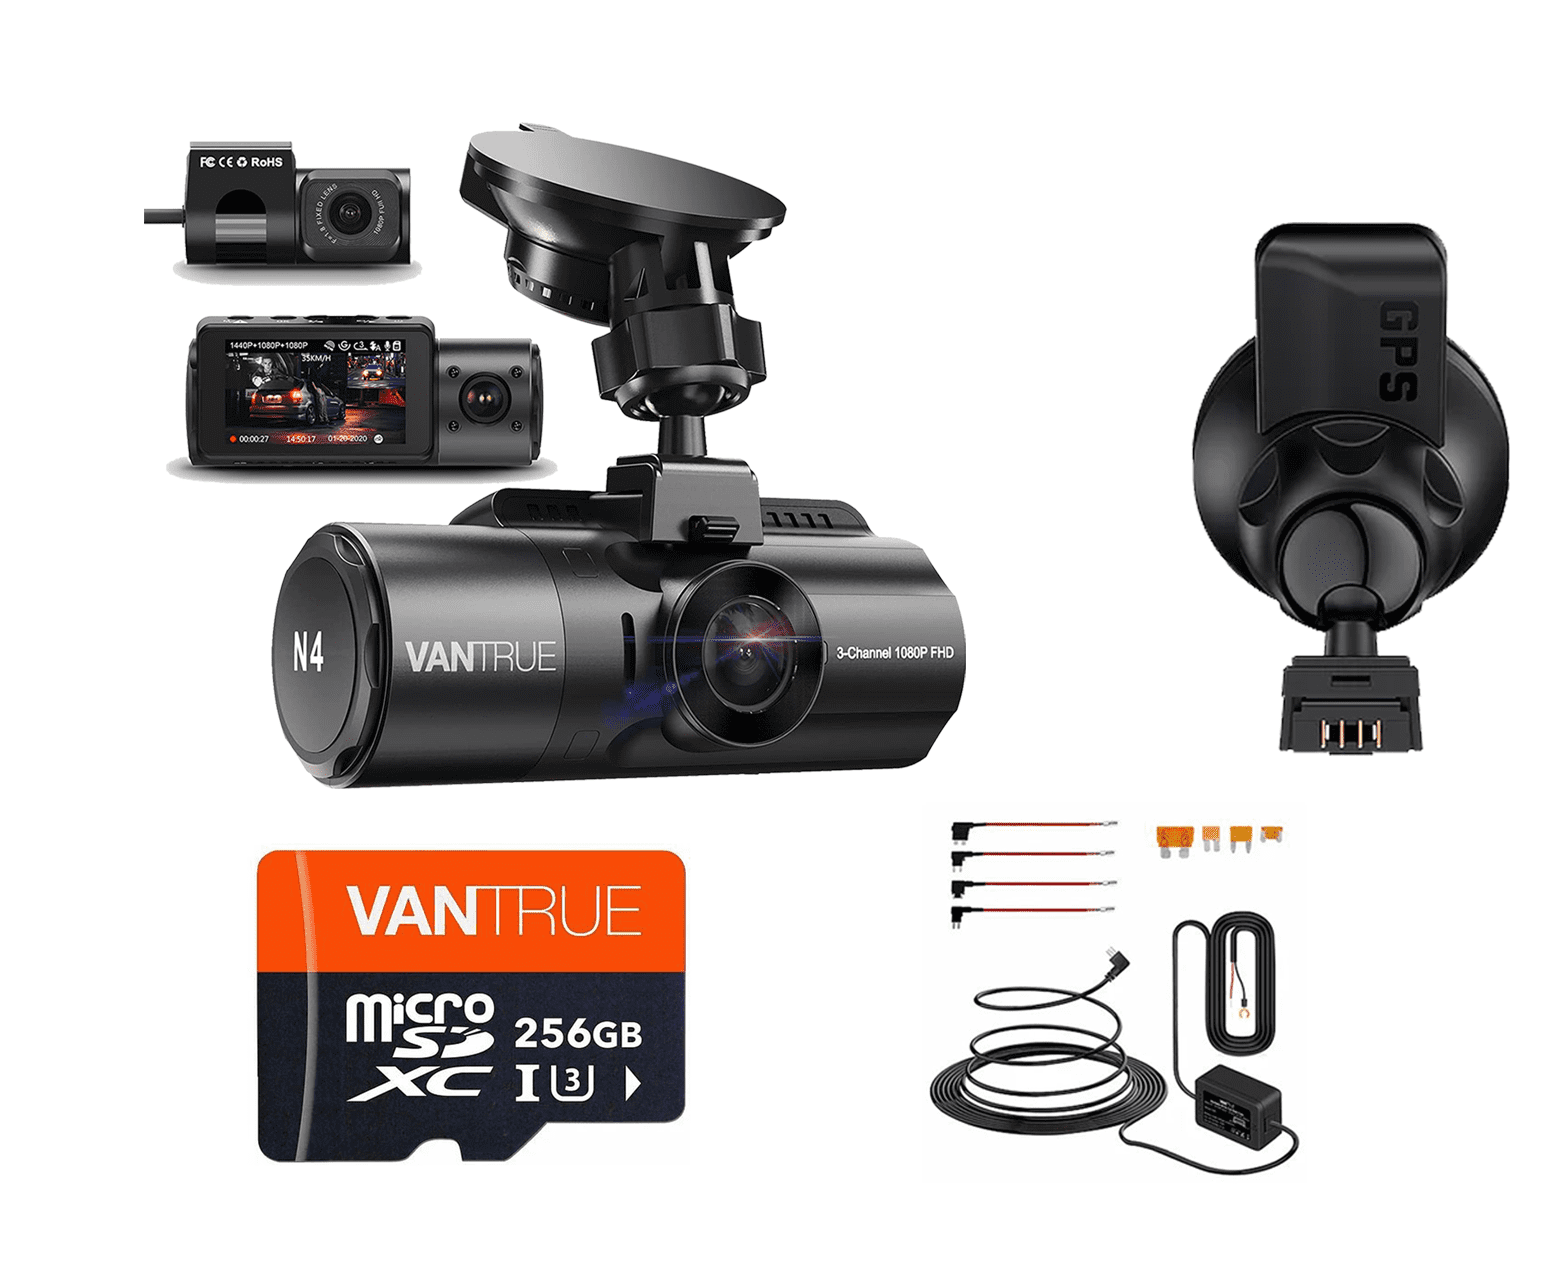 Caméra de tableau de bord Vantrue N4 à 3 canaux 1440p | mon GPS & Kit & SD - Bundle